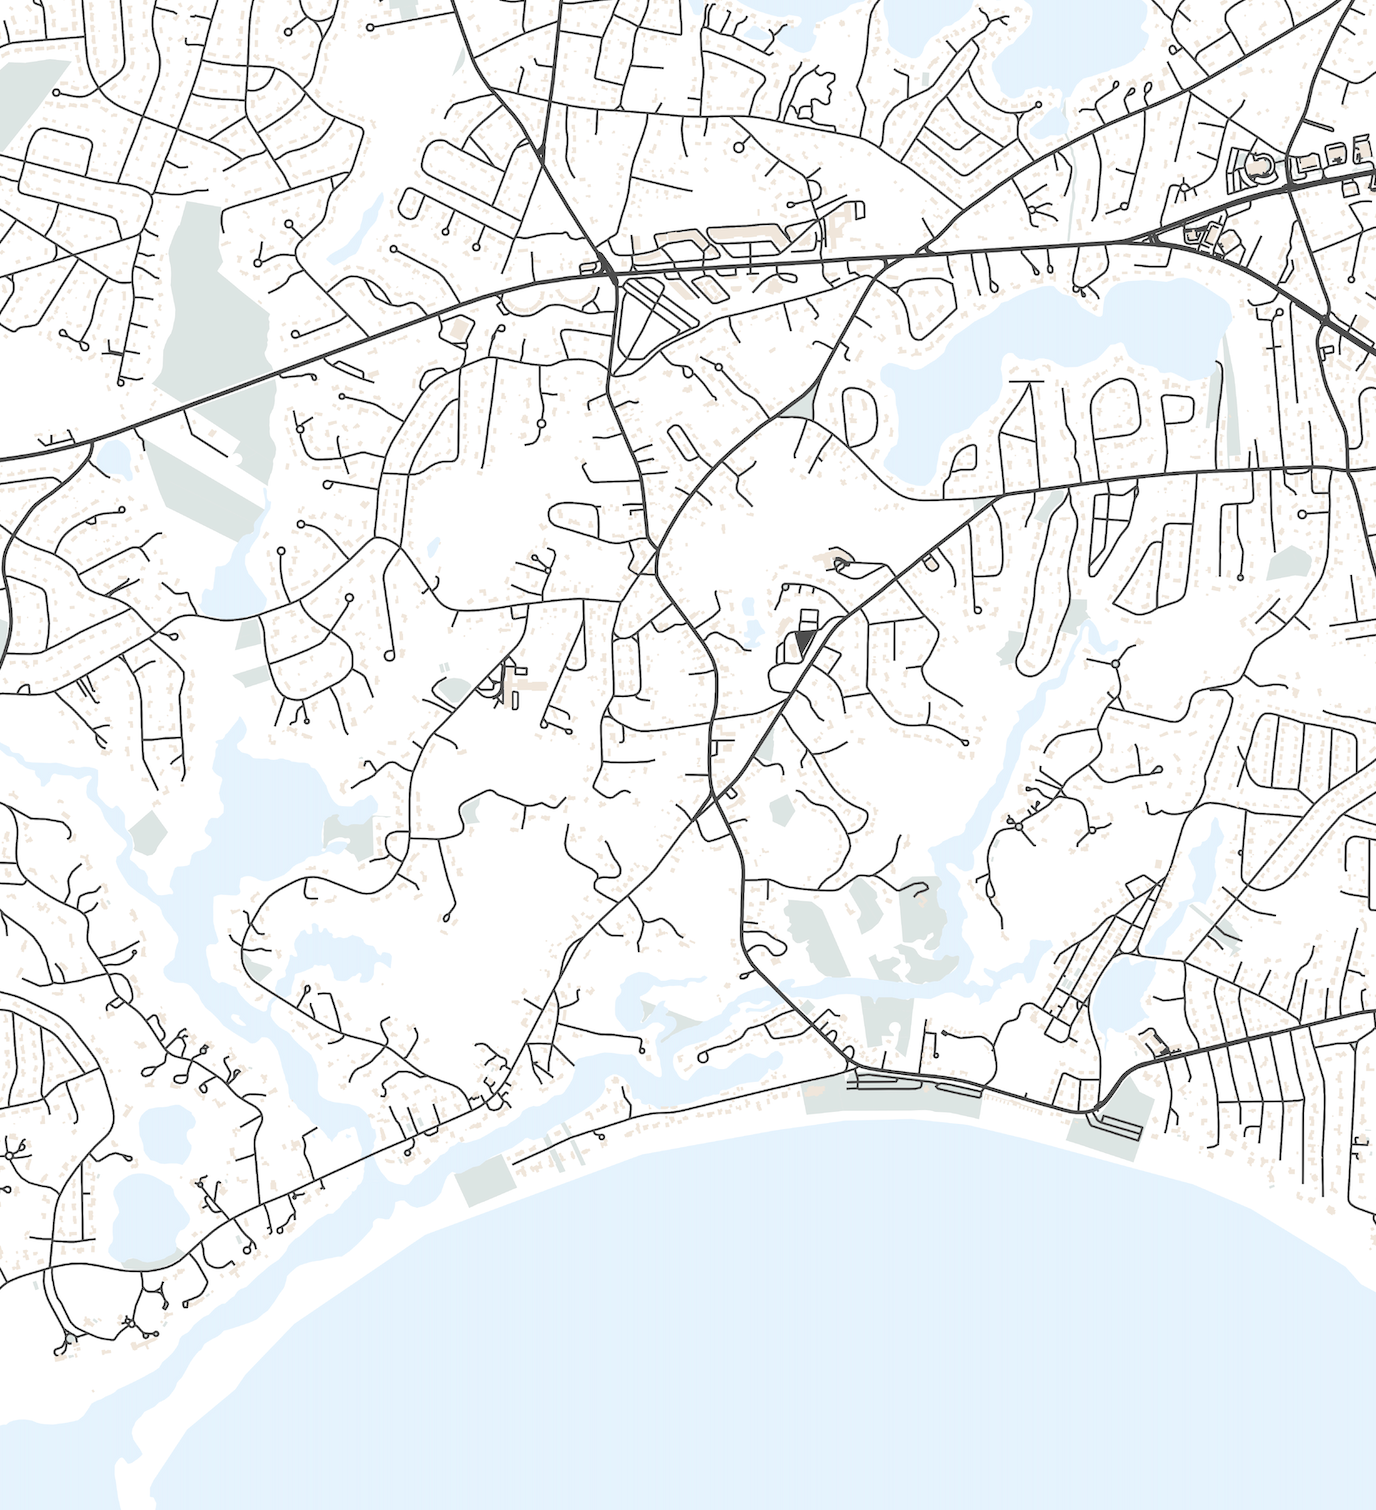 Centerville Map Print